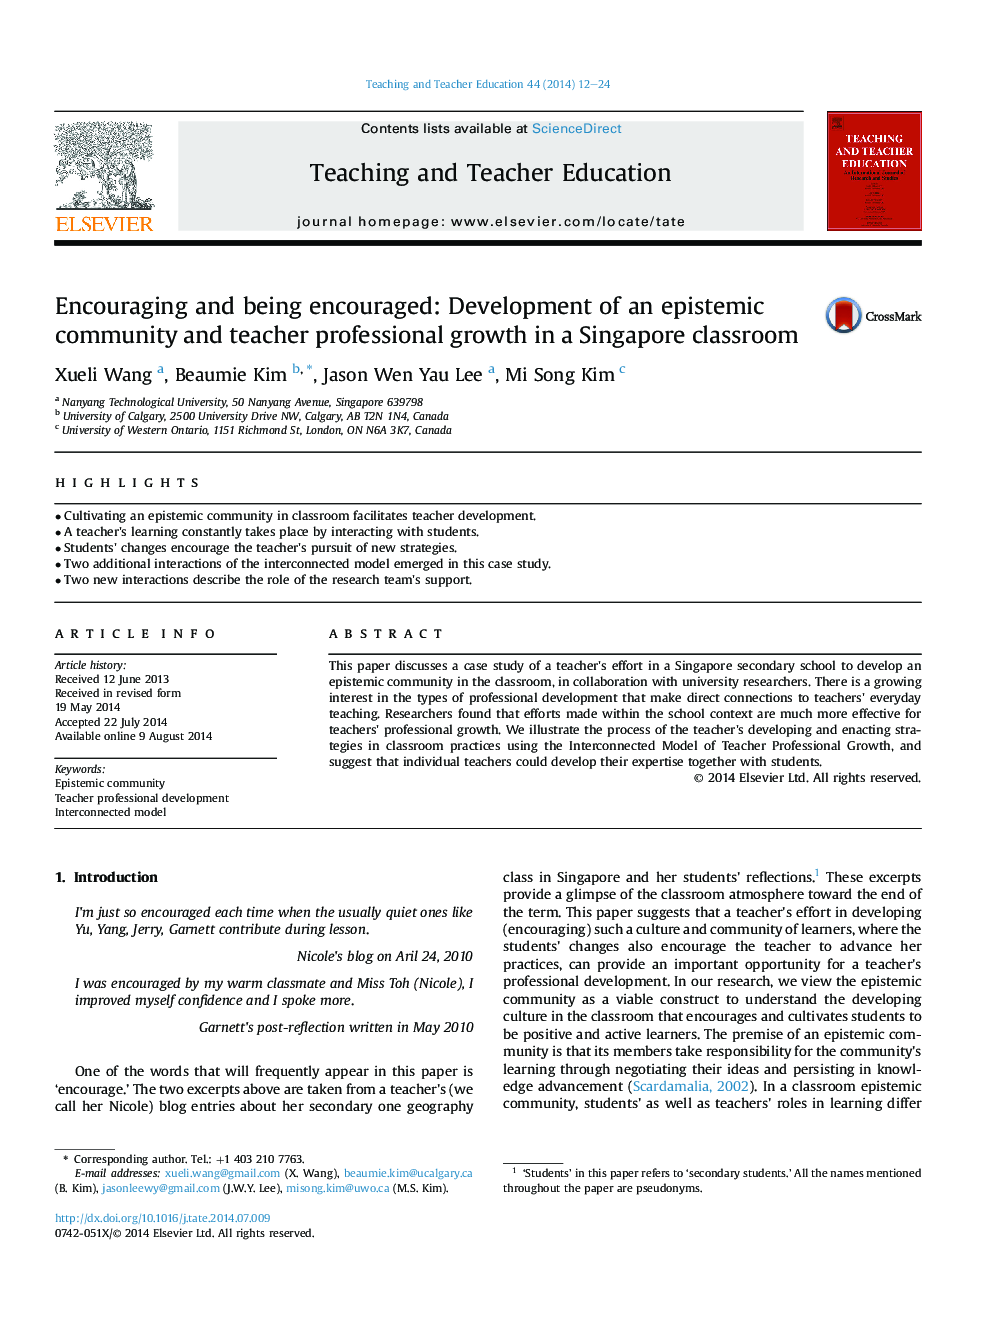 تشویق و تشویق شدن : توسعه یک جامعه معرفتی و رشد حرفه ای معلم در کلاس درس در سنگاپور